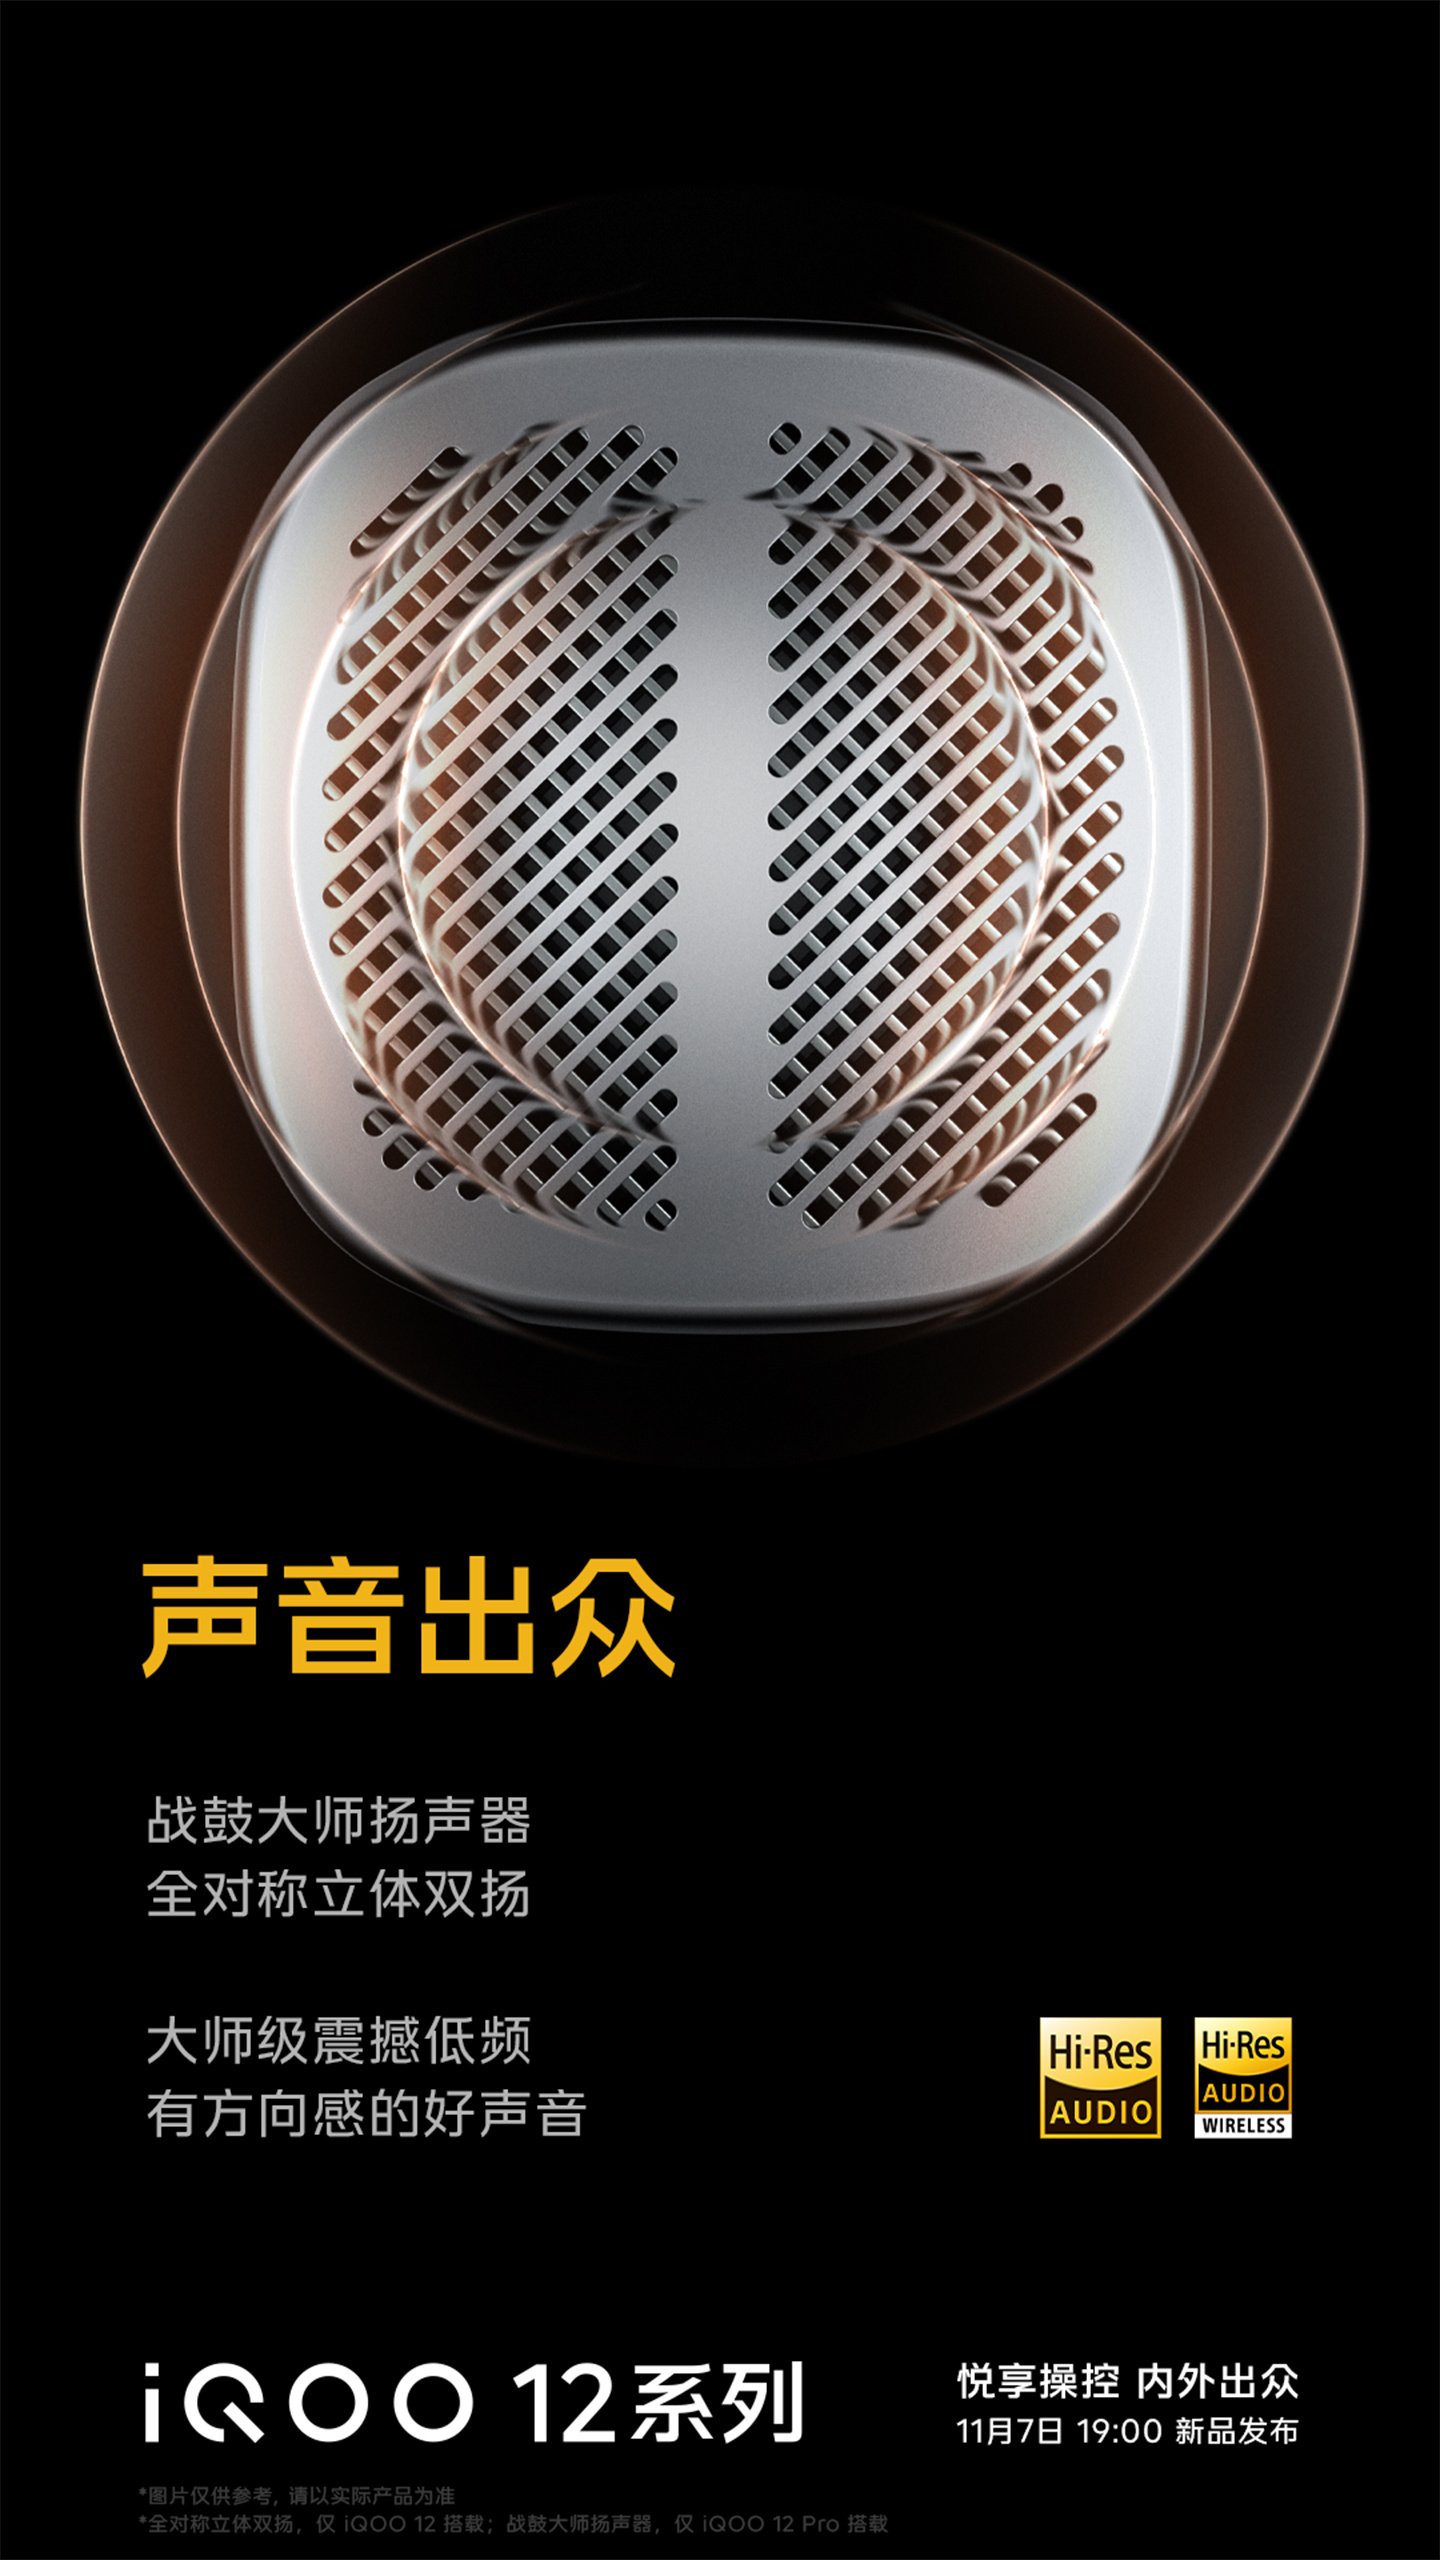 iQOO 12 series speakers